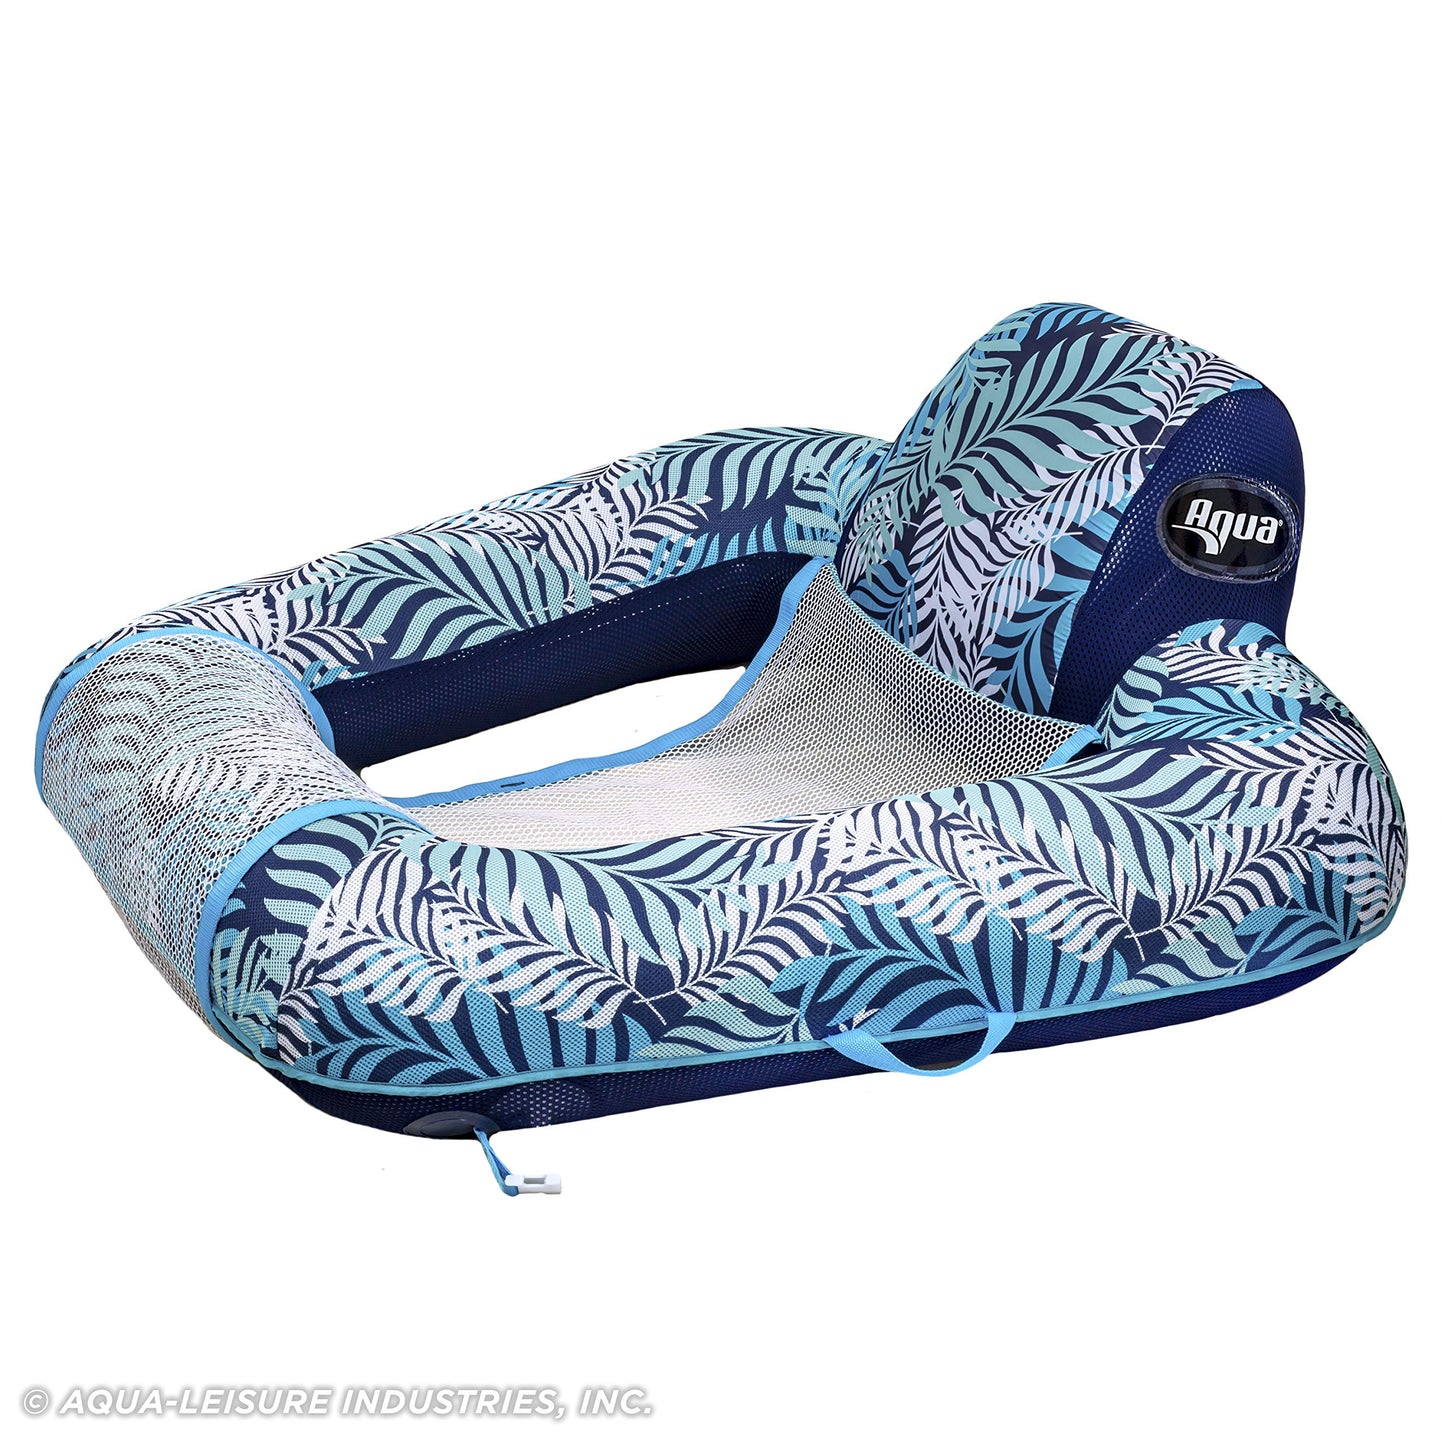 Flotteur de chaise de piscine Aqua pour adultes - Flotteurs de piscine Zero Gravity - Plusieurs couleurs/formes/styles - pour adultes et enfants Chaise de piscine flottante Zero Gravity Blue Fern